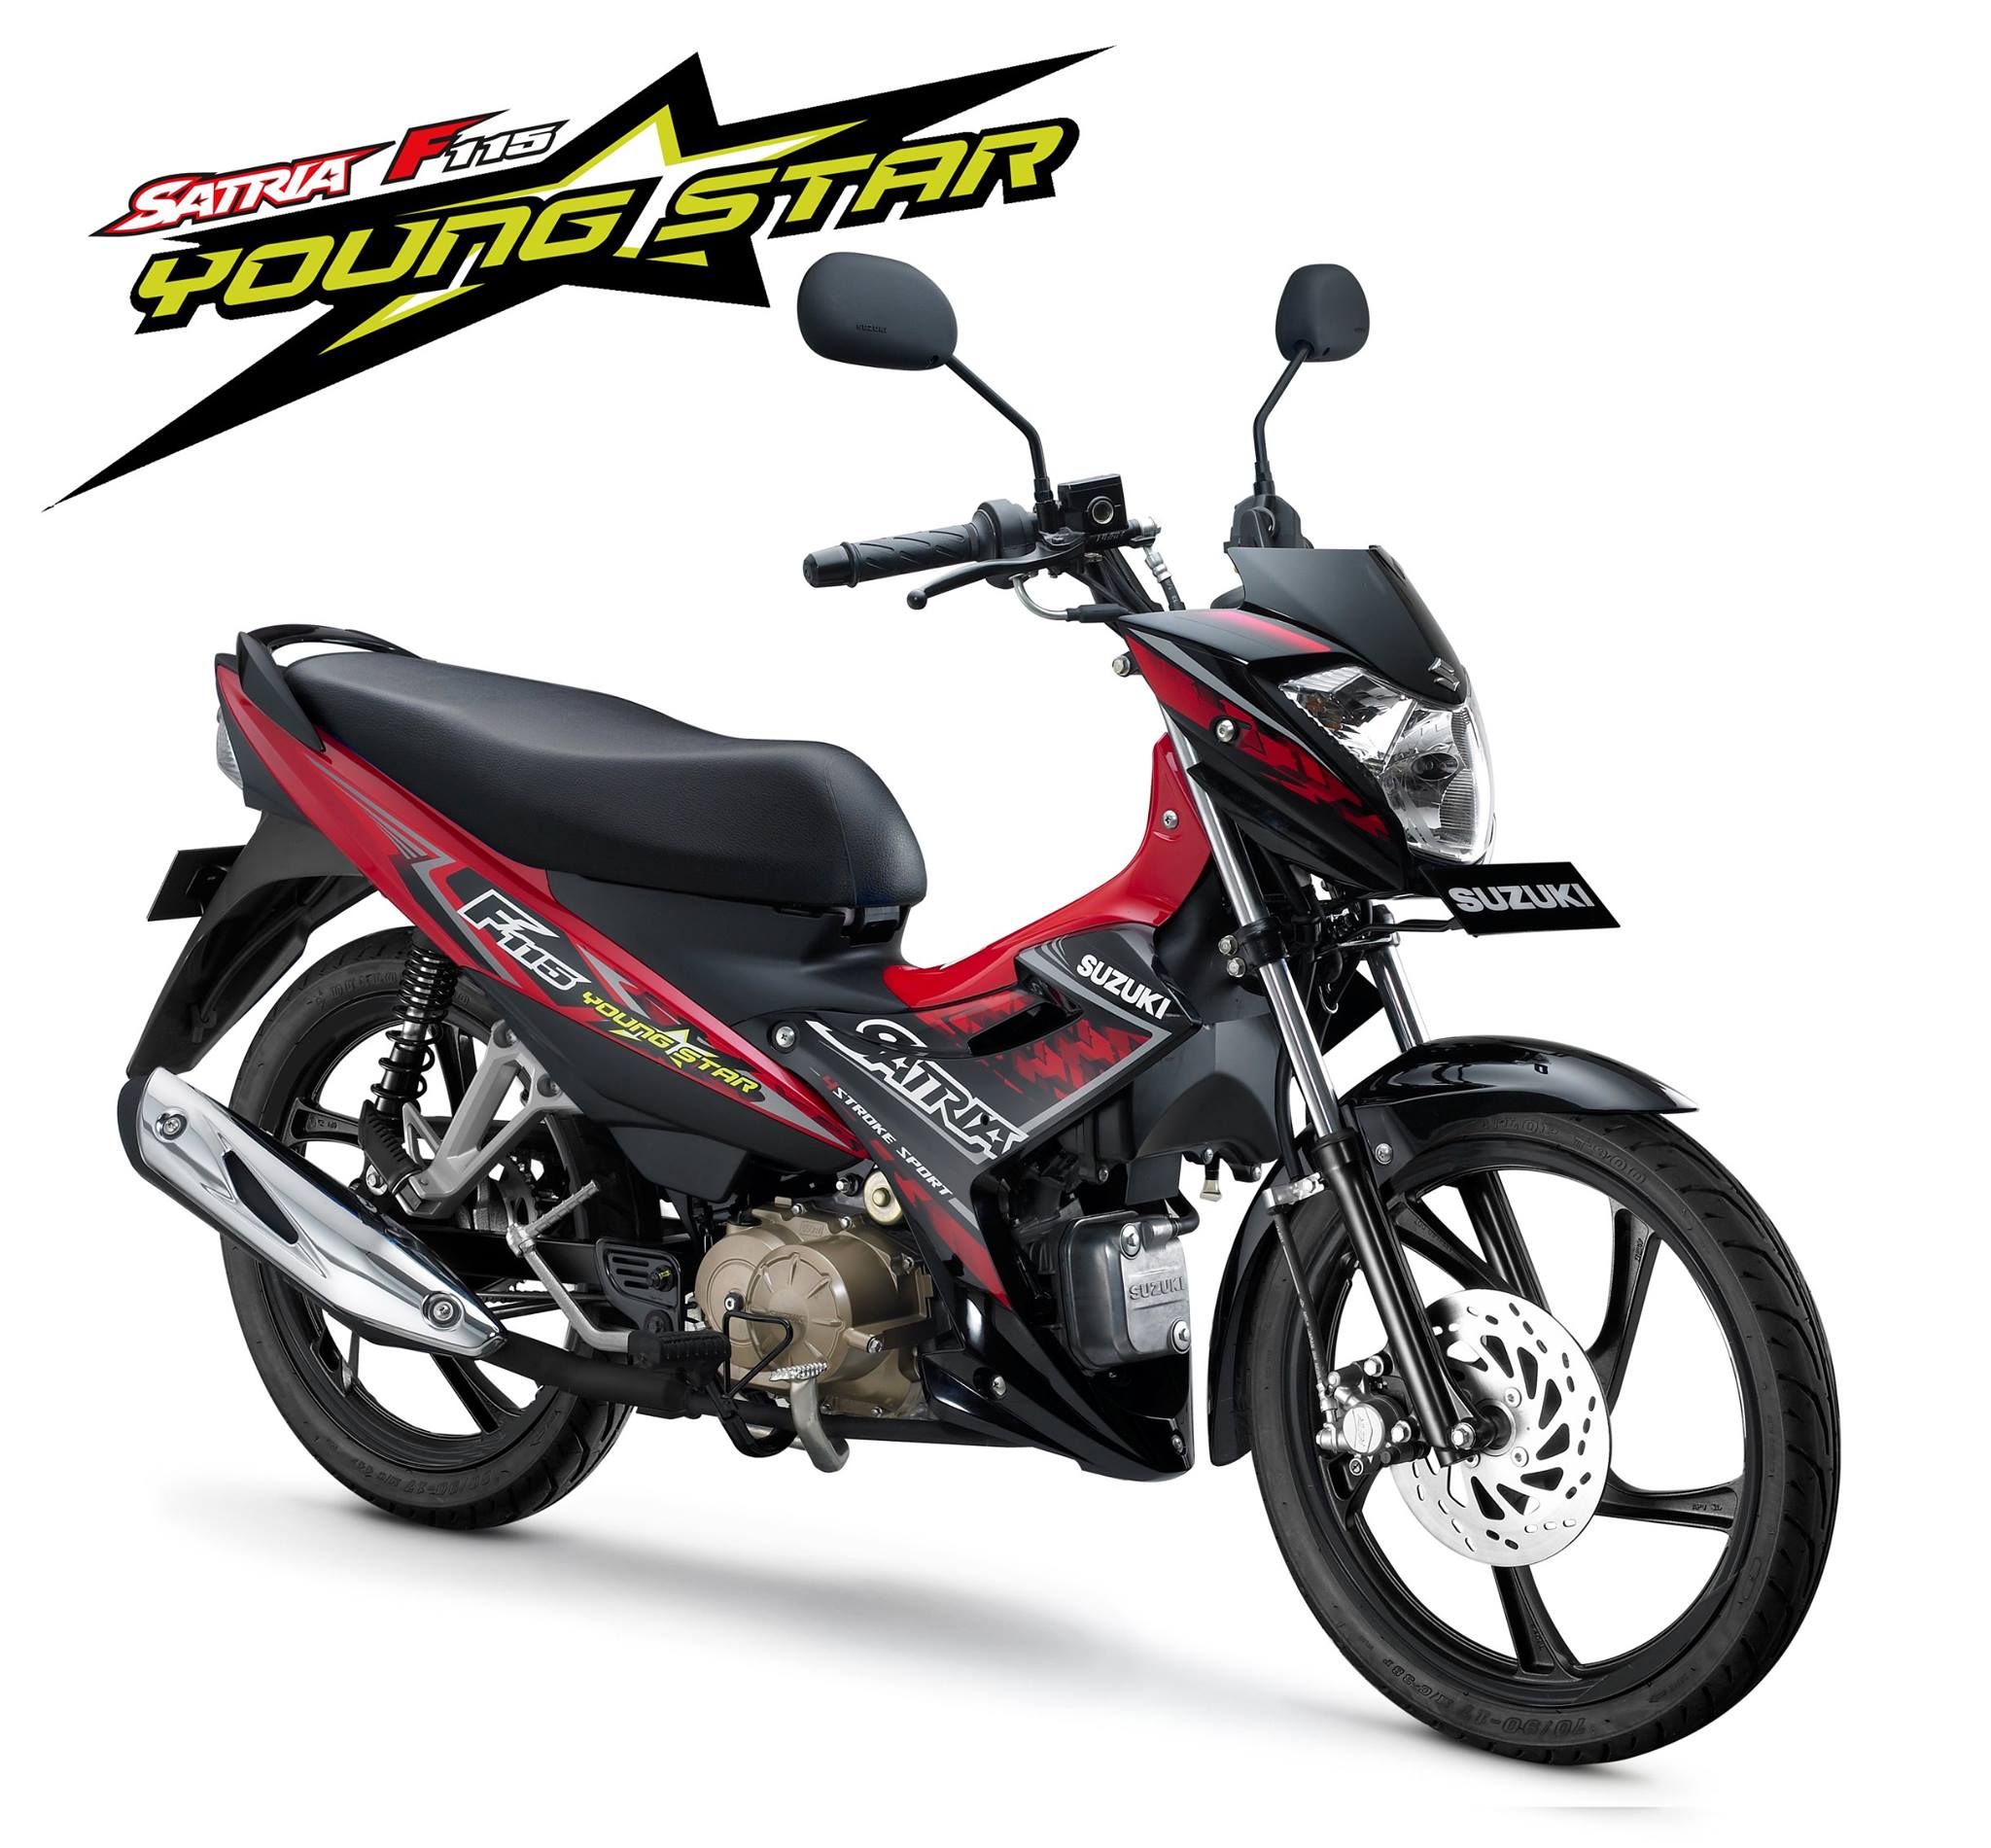 2015 Suzuki Satria F115 Young Star Indonesia 001